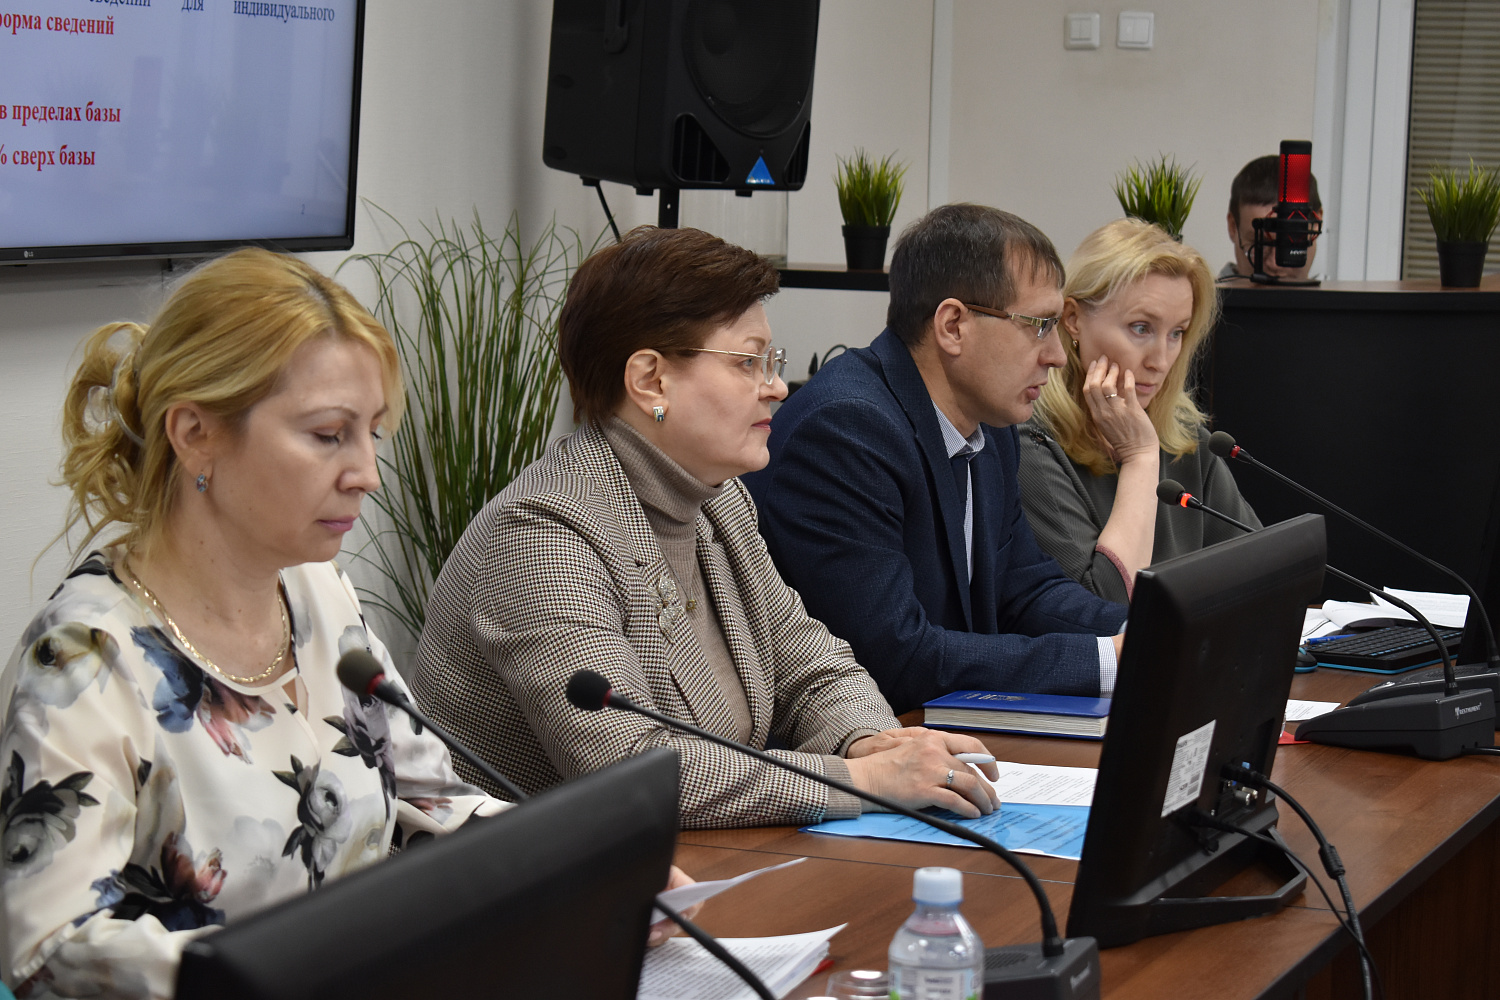 26 января 2023 г. в ТПП Чувашской Республики состоялось первое в 2023 г. заседание Клуба кадровиков.